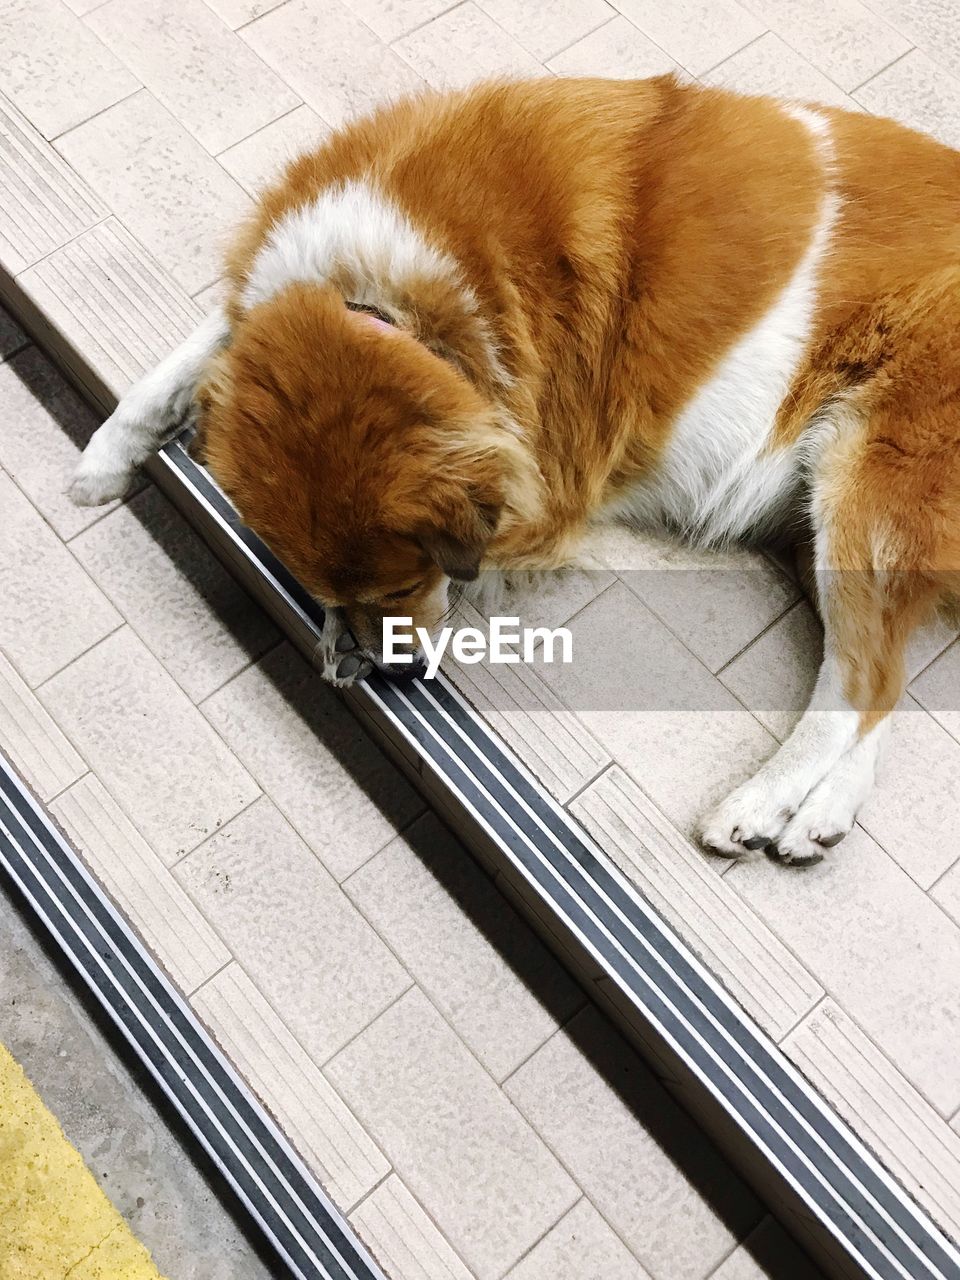 HIGH ANGLE VIEW OF A DOG SLEEPING ON TILED FLOOR